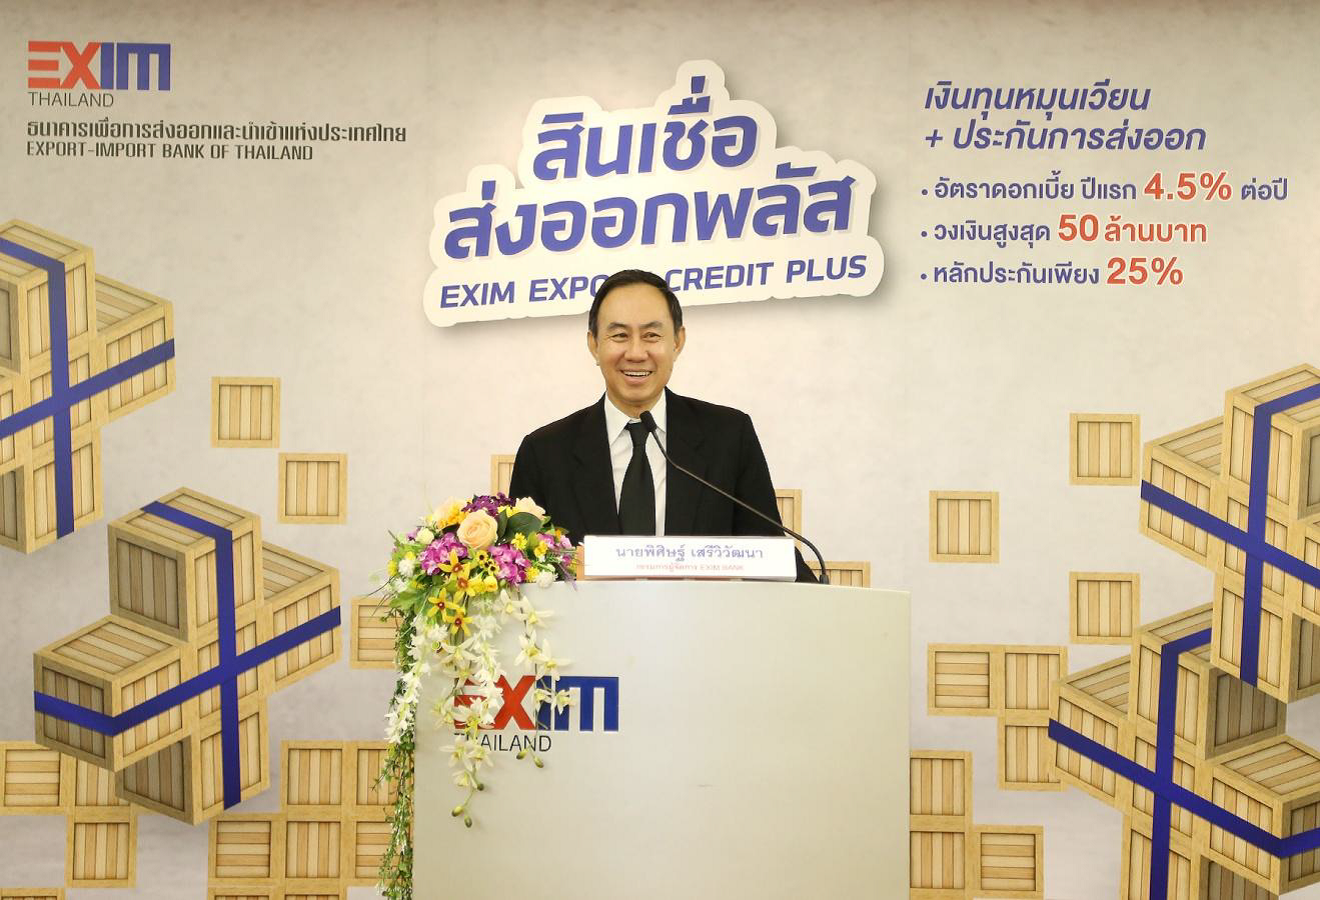 EXIM BANK เปิดบริการใหม่ “สินเชื่อส่งออกพลัส” สนับสนุน SMEs บุกตลาดใหม่ กระตุ้นการเติบโตของภาคการส่งออกปี 2560